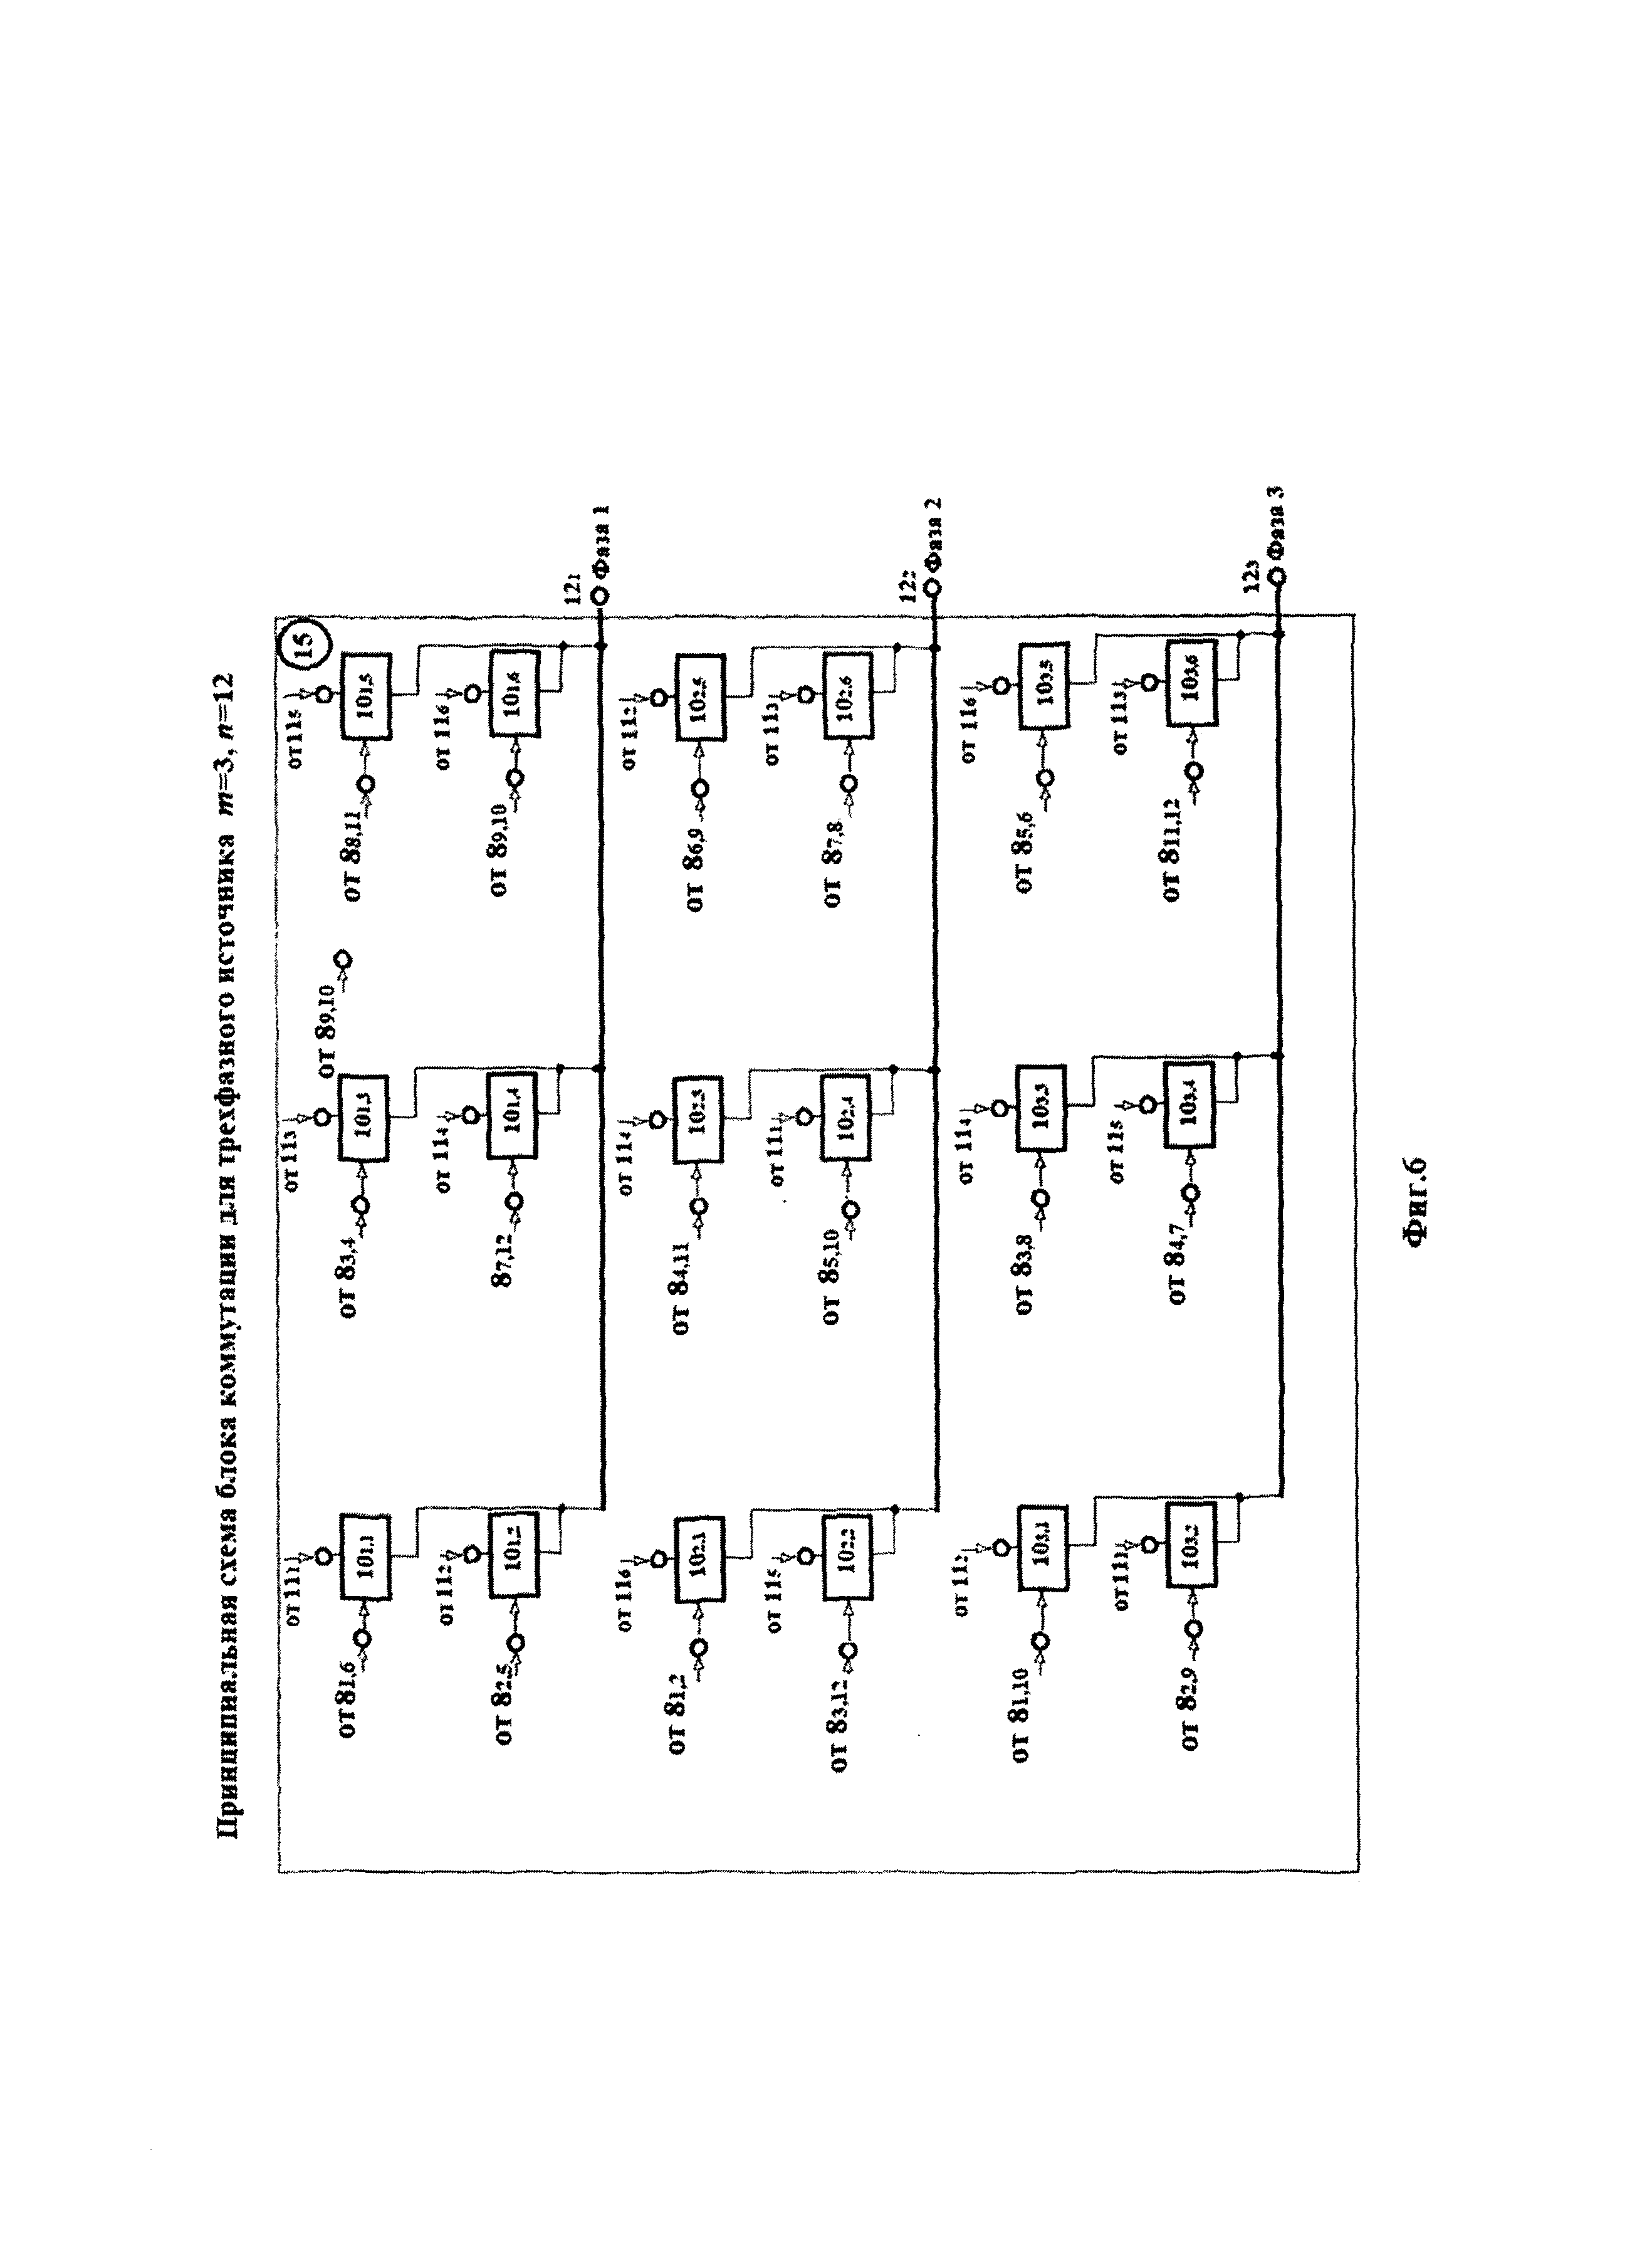 Генератор многофазной системы ЭДС с использованием блока диодов для сокращения в два раза числа силовых ключей